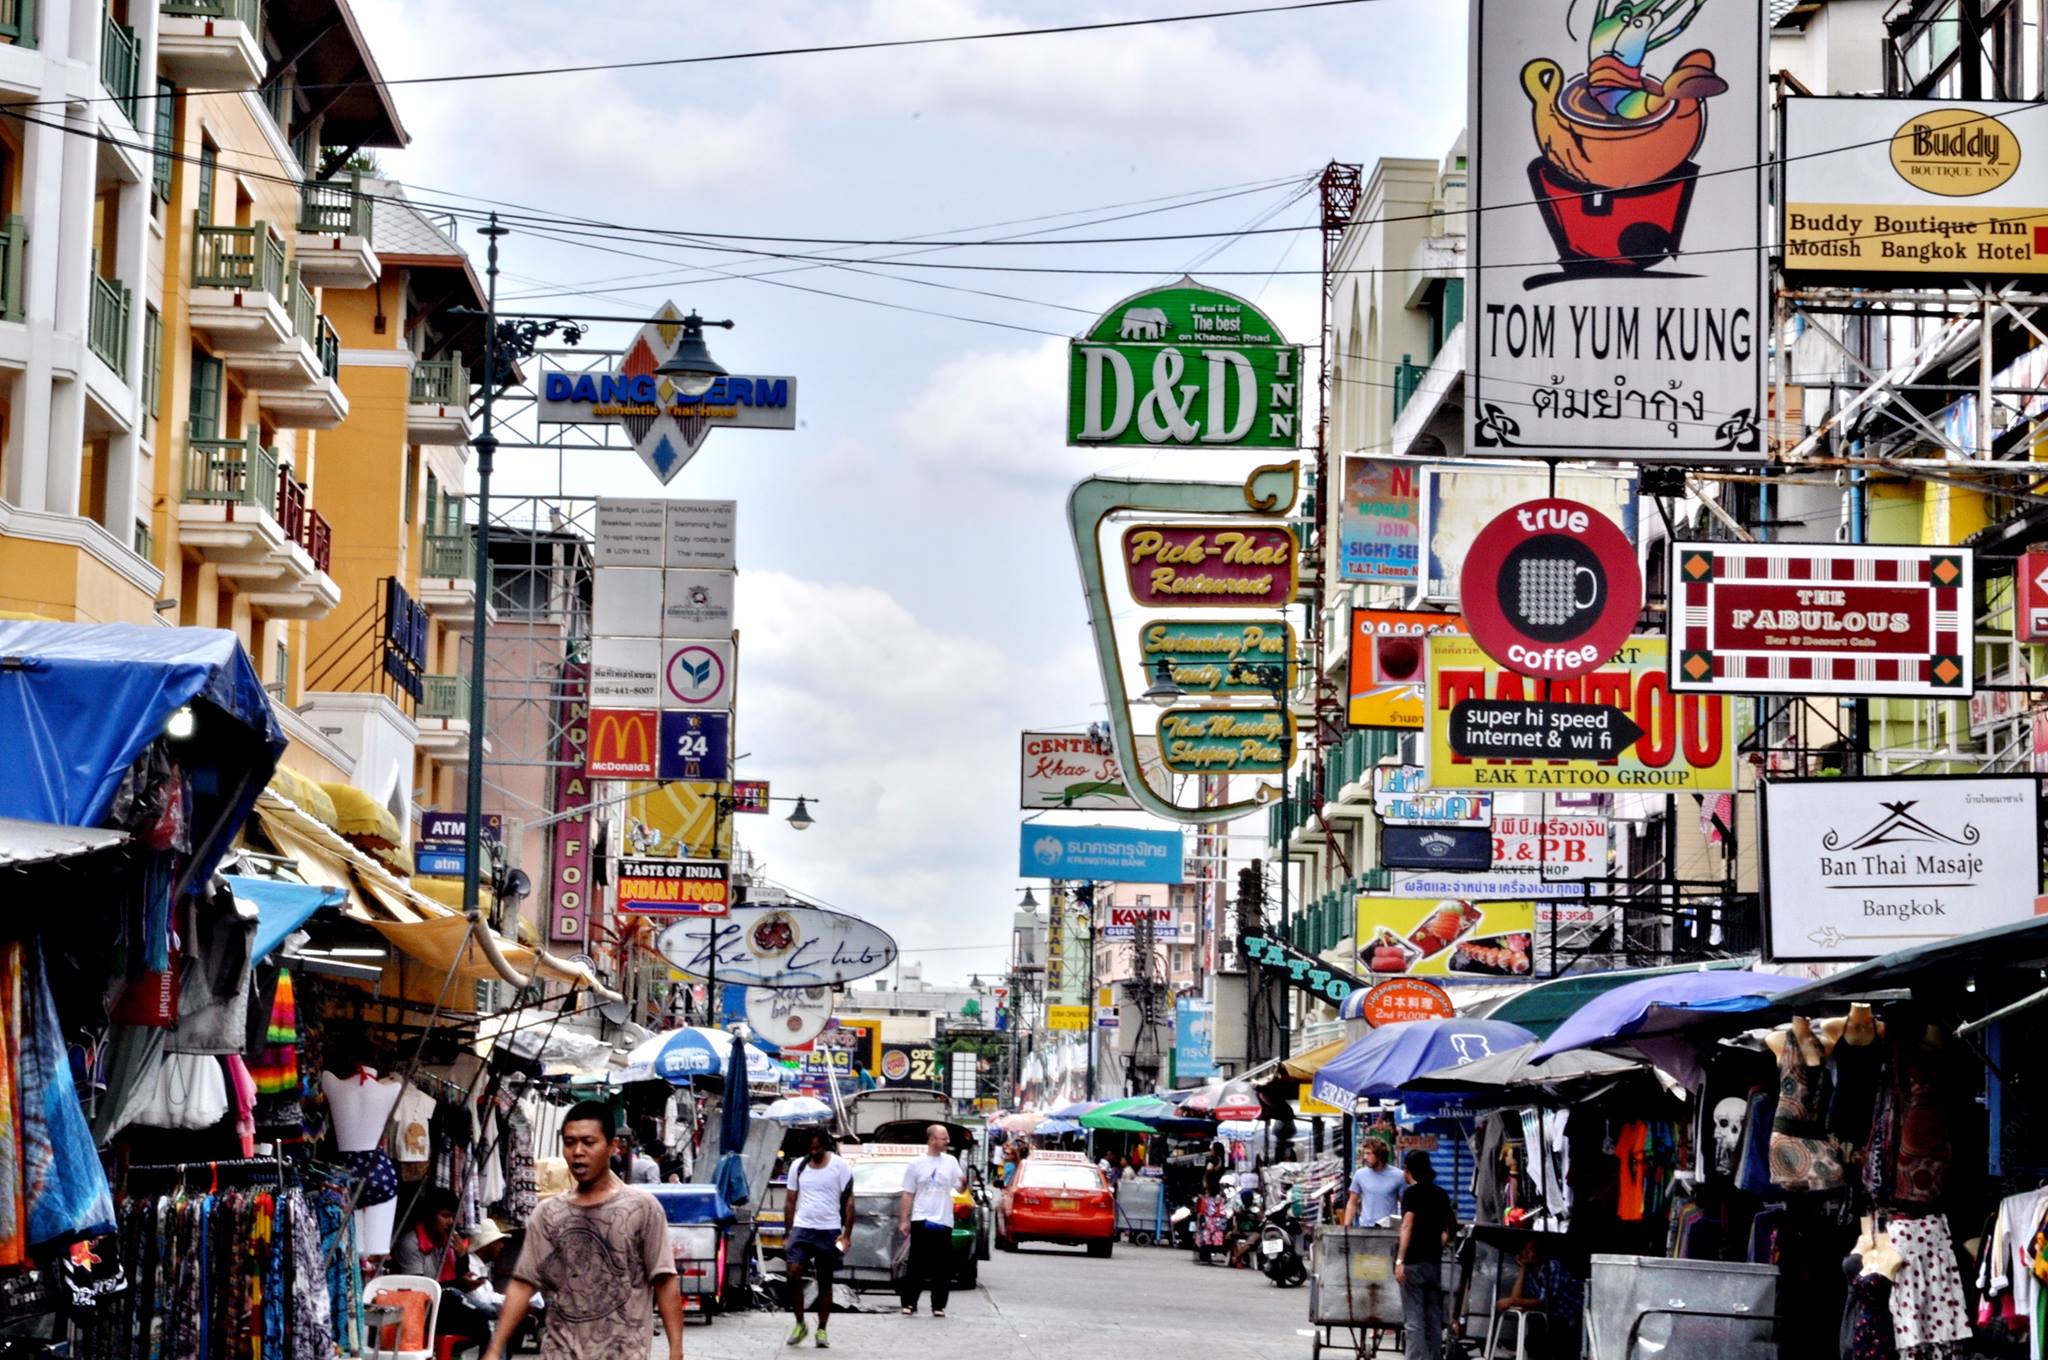 ถนนข้าวสาร - สถานที่ท่องเที่ยว ท่องเที่ยวไทย